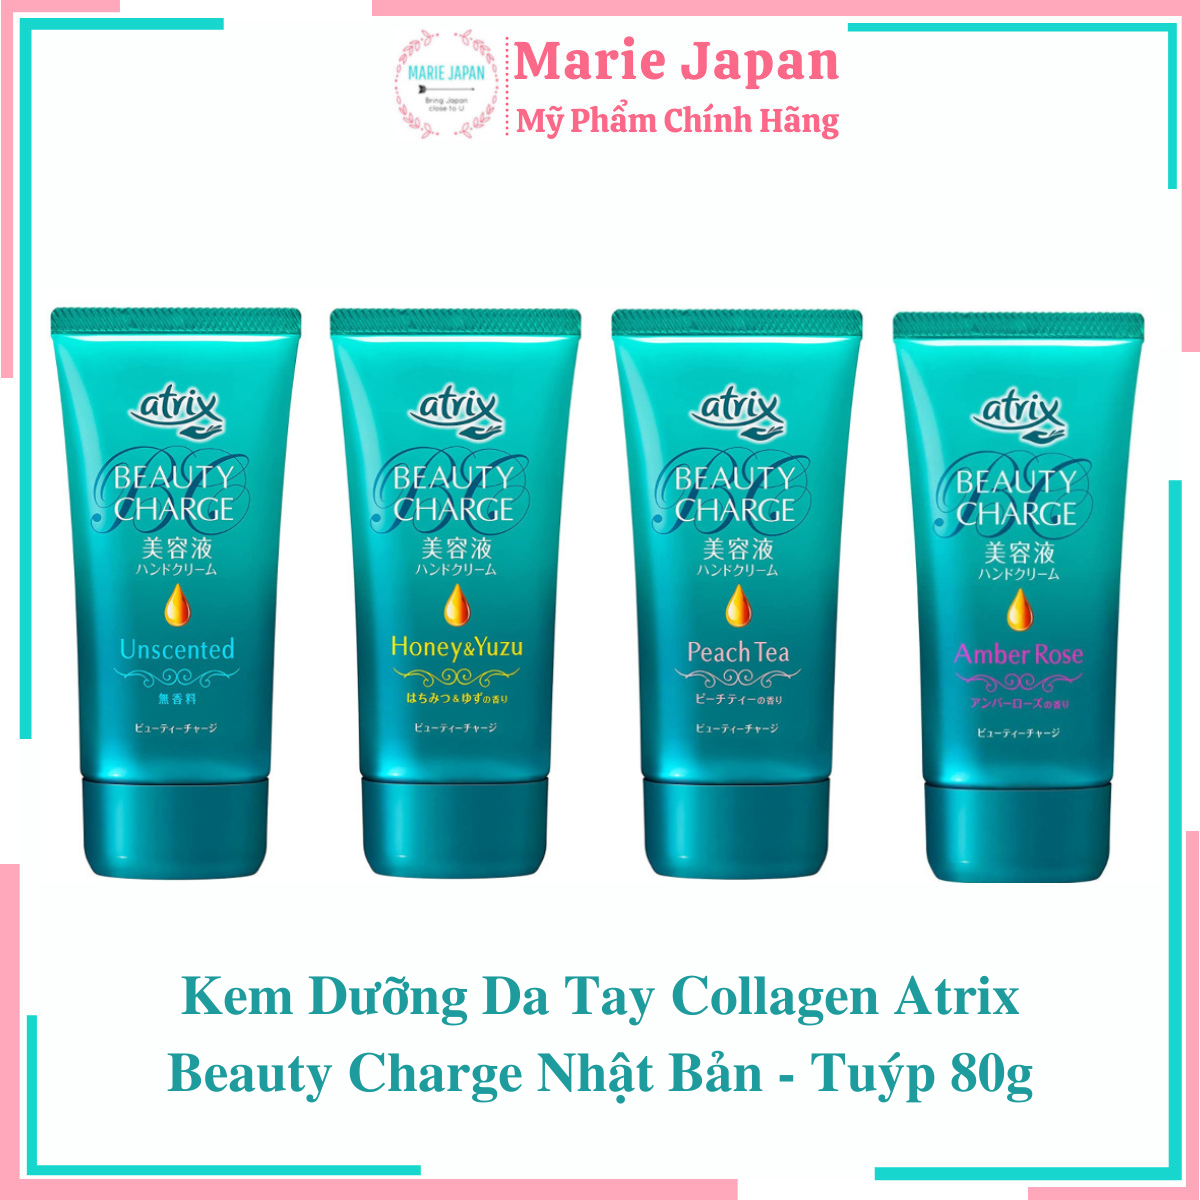 Kem Dưỡng Da Tay Collagen Atrix Beauty Charge Nhật Bản - Tuýp 80g